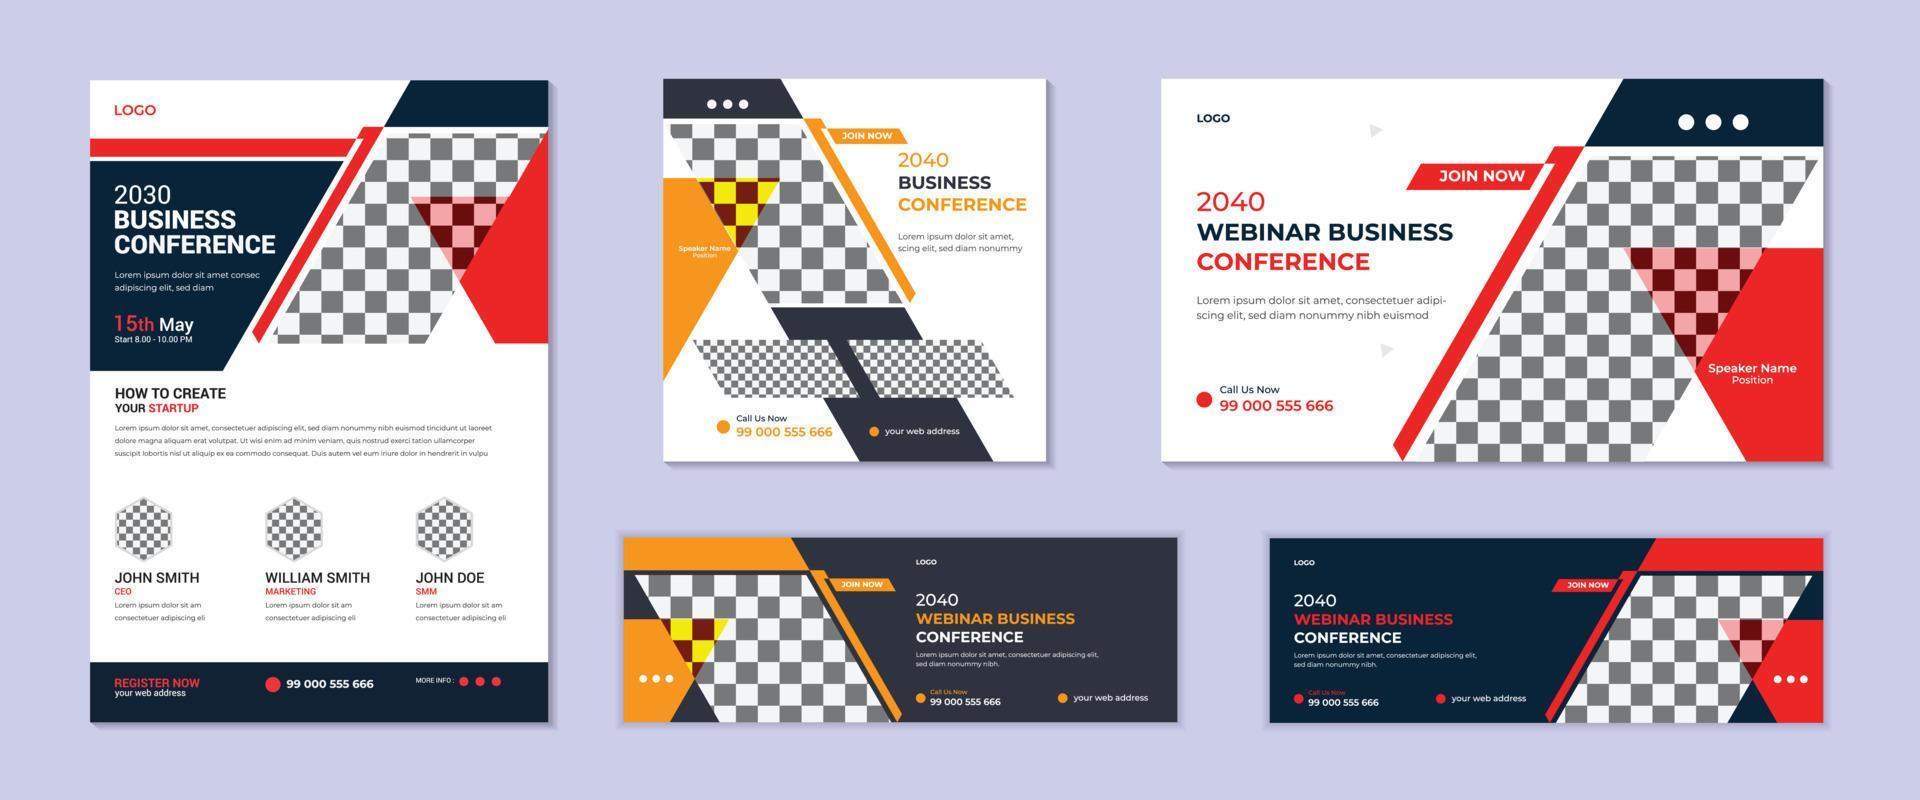 Corporate Business Webinar Konferenz Web-Banner-Design. Verwendbar für Cover-Design, Jahresbericht, Poster, Flyer, Business-Konferenz-Flyer und Online-Webinar-Konferenz-Einladungs-Banner-Design. vektor